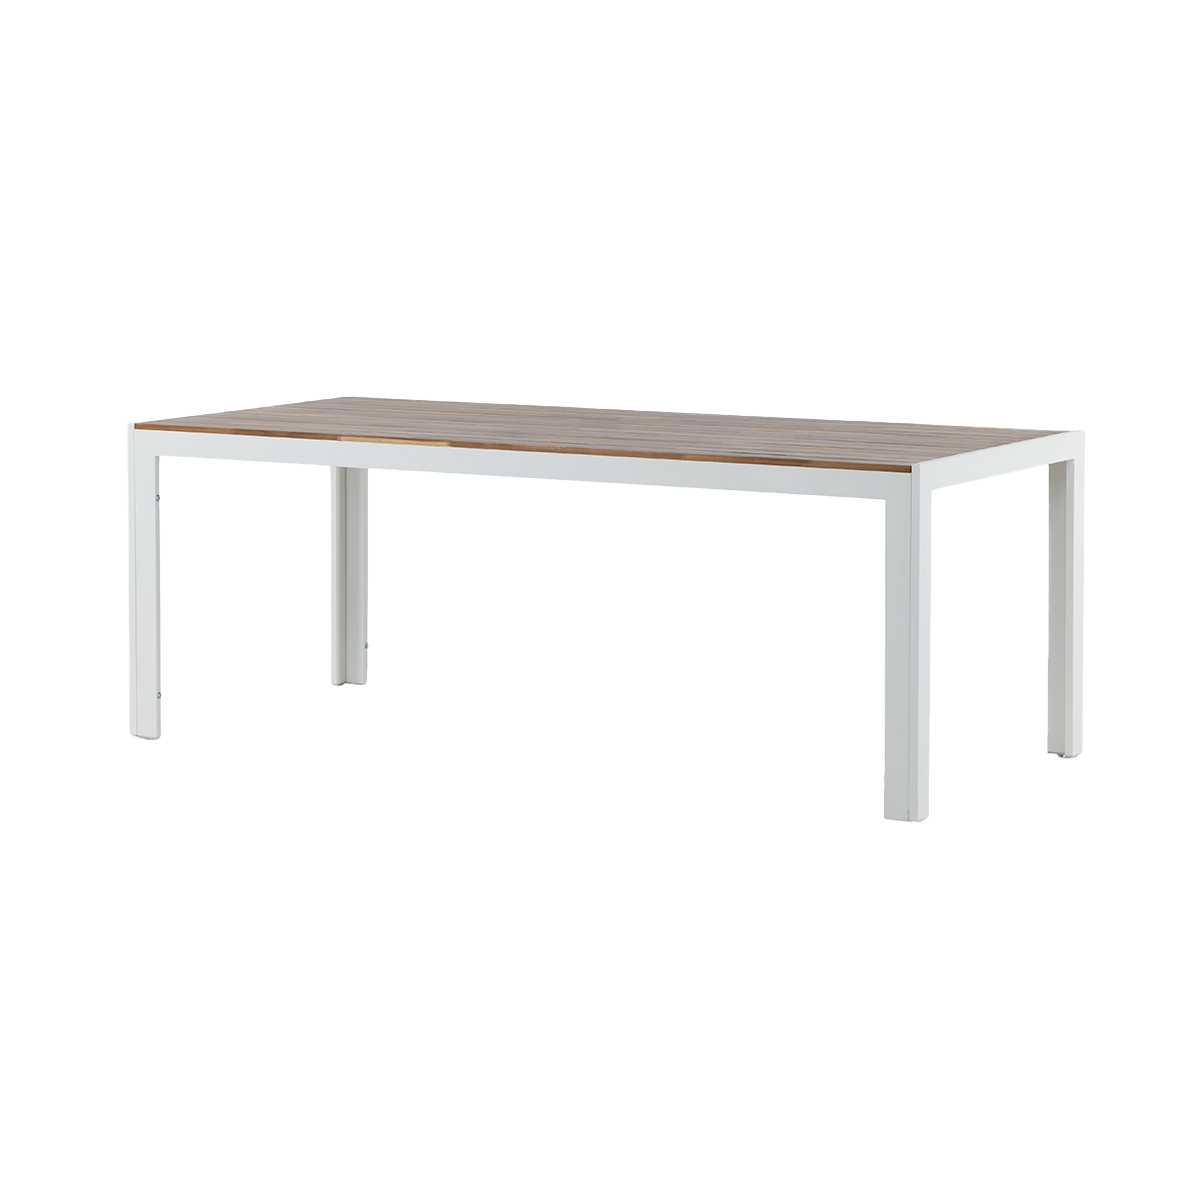 Lasse aluminium tuintafel wit - houten tafelblad - 205 x 90 cm